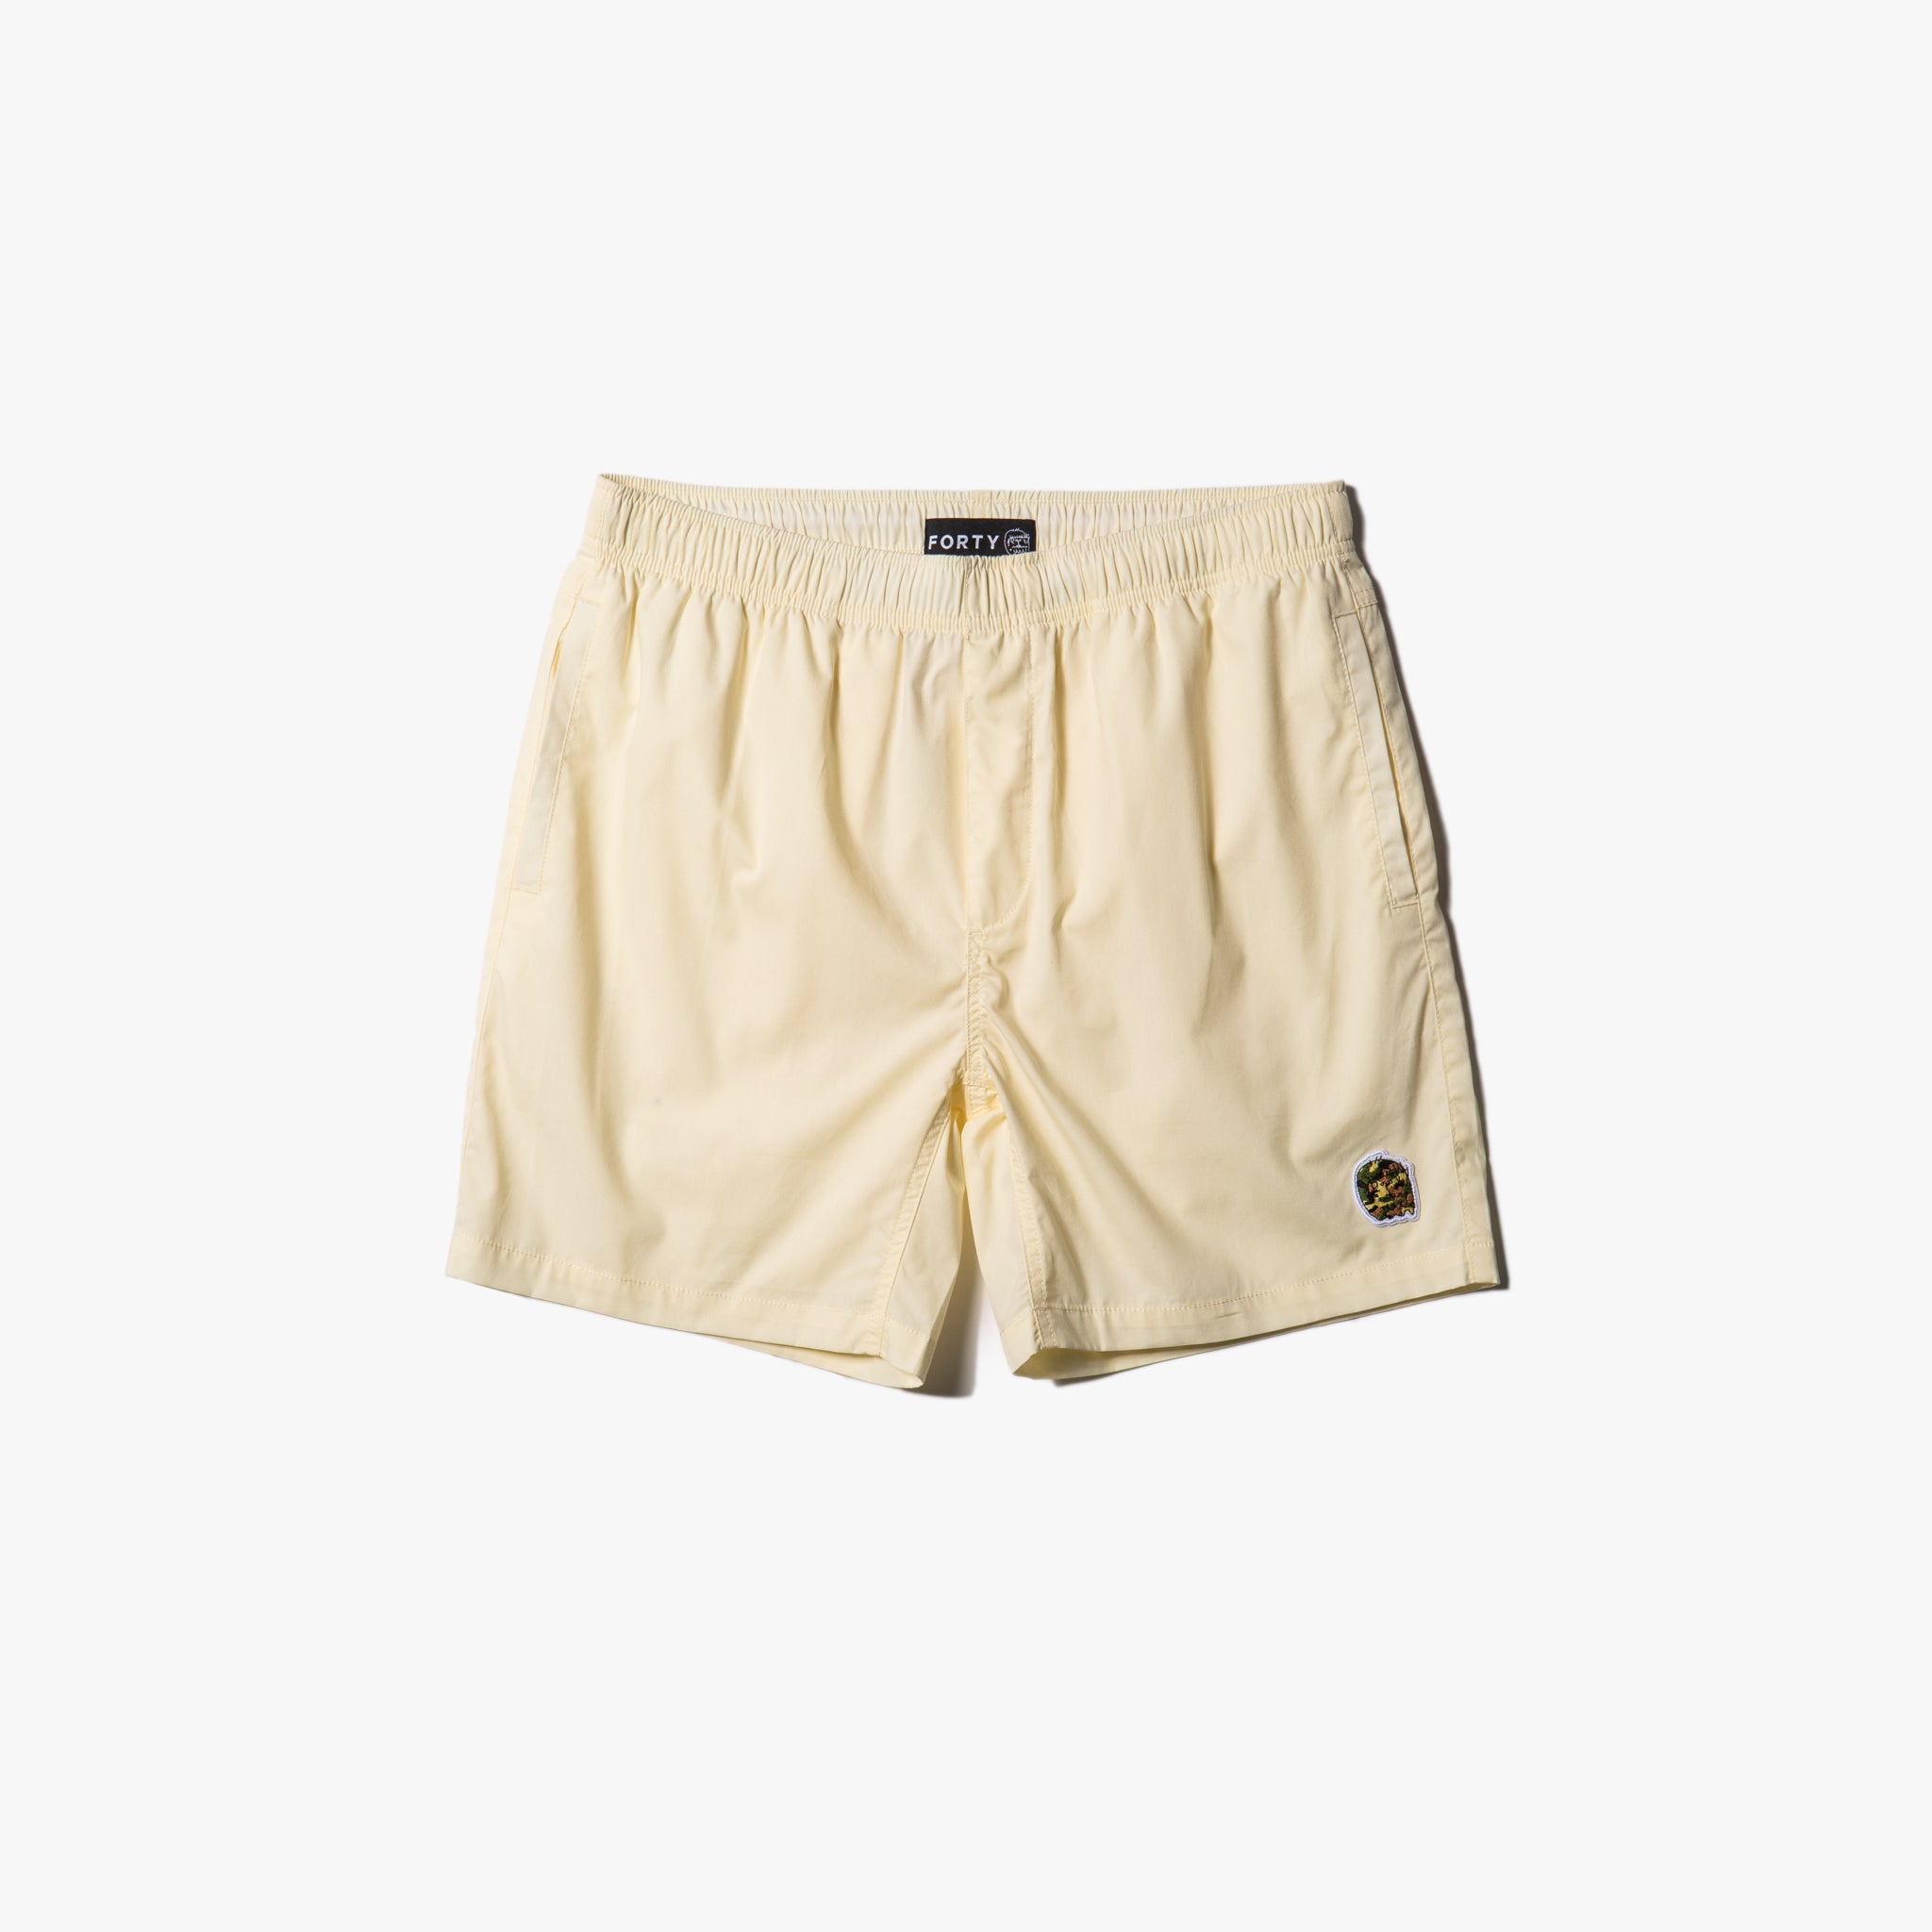 Cam Shorts (Ivory)